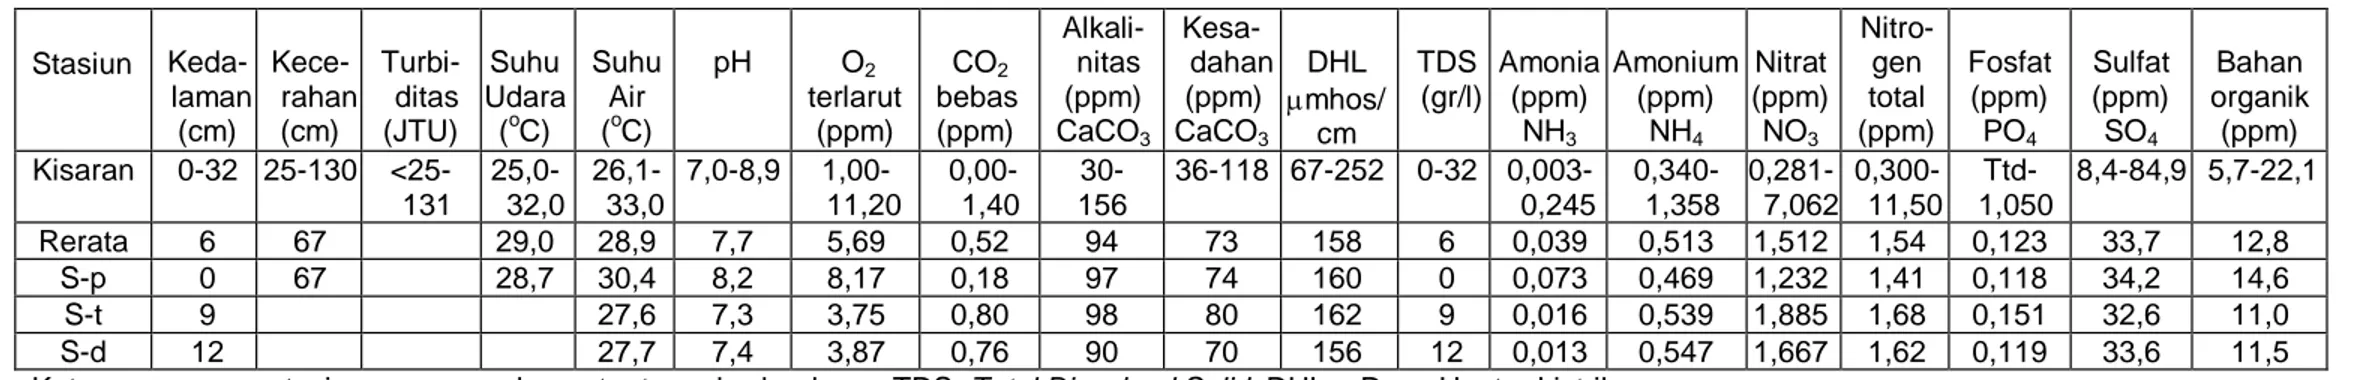 Tabel 1. Kualitas  dan kesuburan air  waduk  sermo   Stasiun   Keda-laman  (cm)   Kece-rahan (cm)   Turbi-ditas (JTU)  Suhu  Udara (oC)  Suhu  Air (oC)  pH  O 2 terlarut (ppm)  CO 2 bebas  (ppm)   Alkali-nitas  (ppm) CaCO 3  Kesa-dahan (ppm) CaCO3 DHL  mh